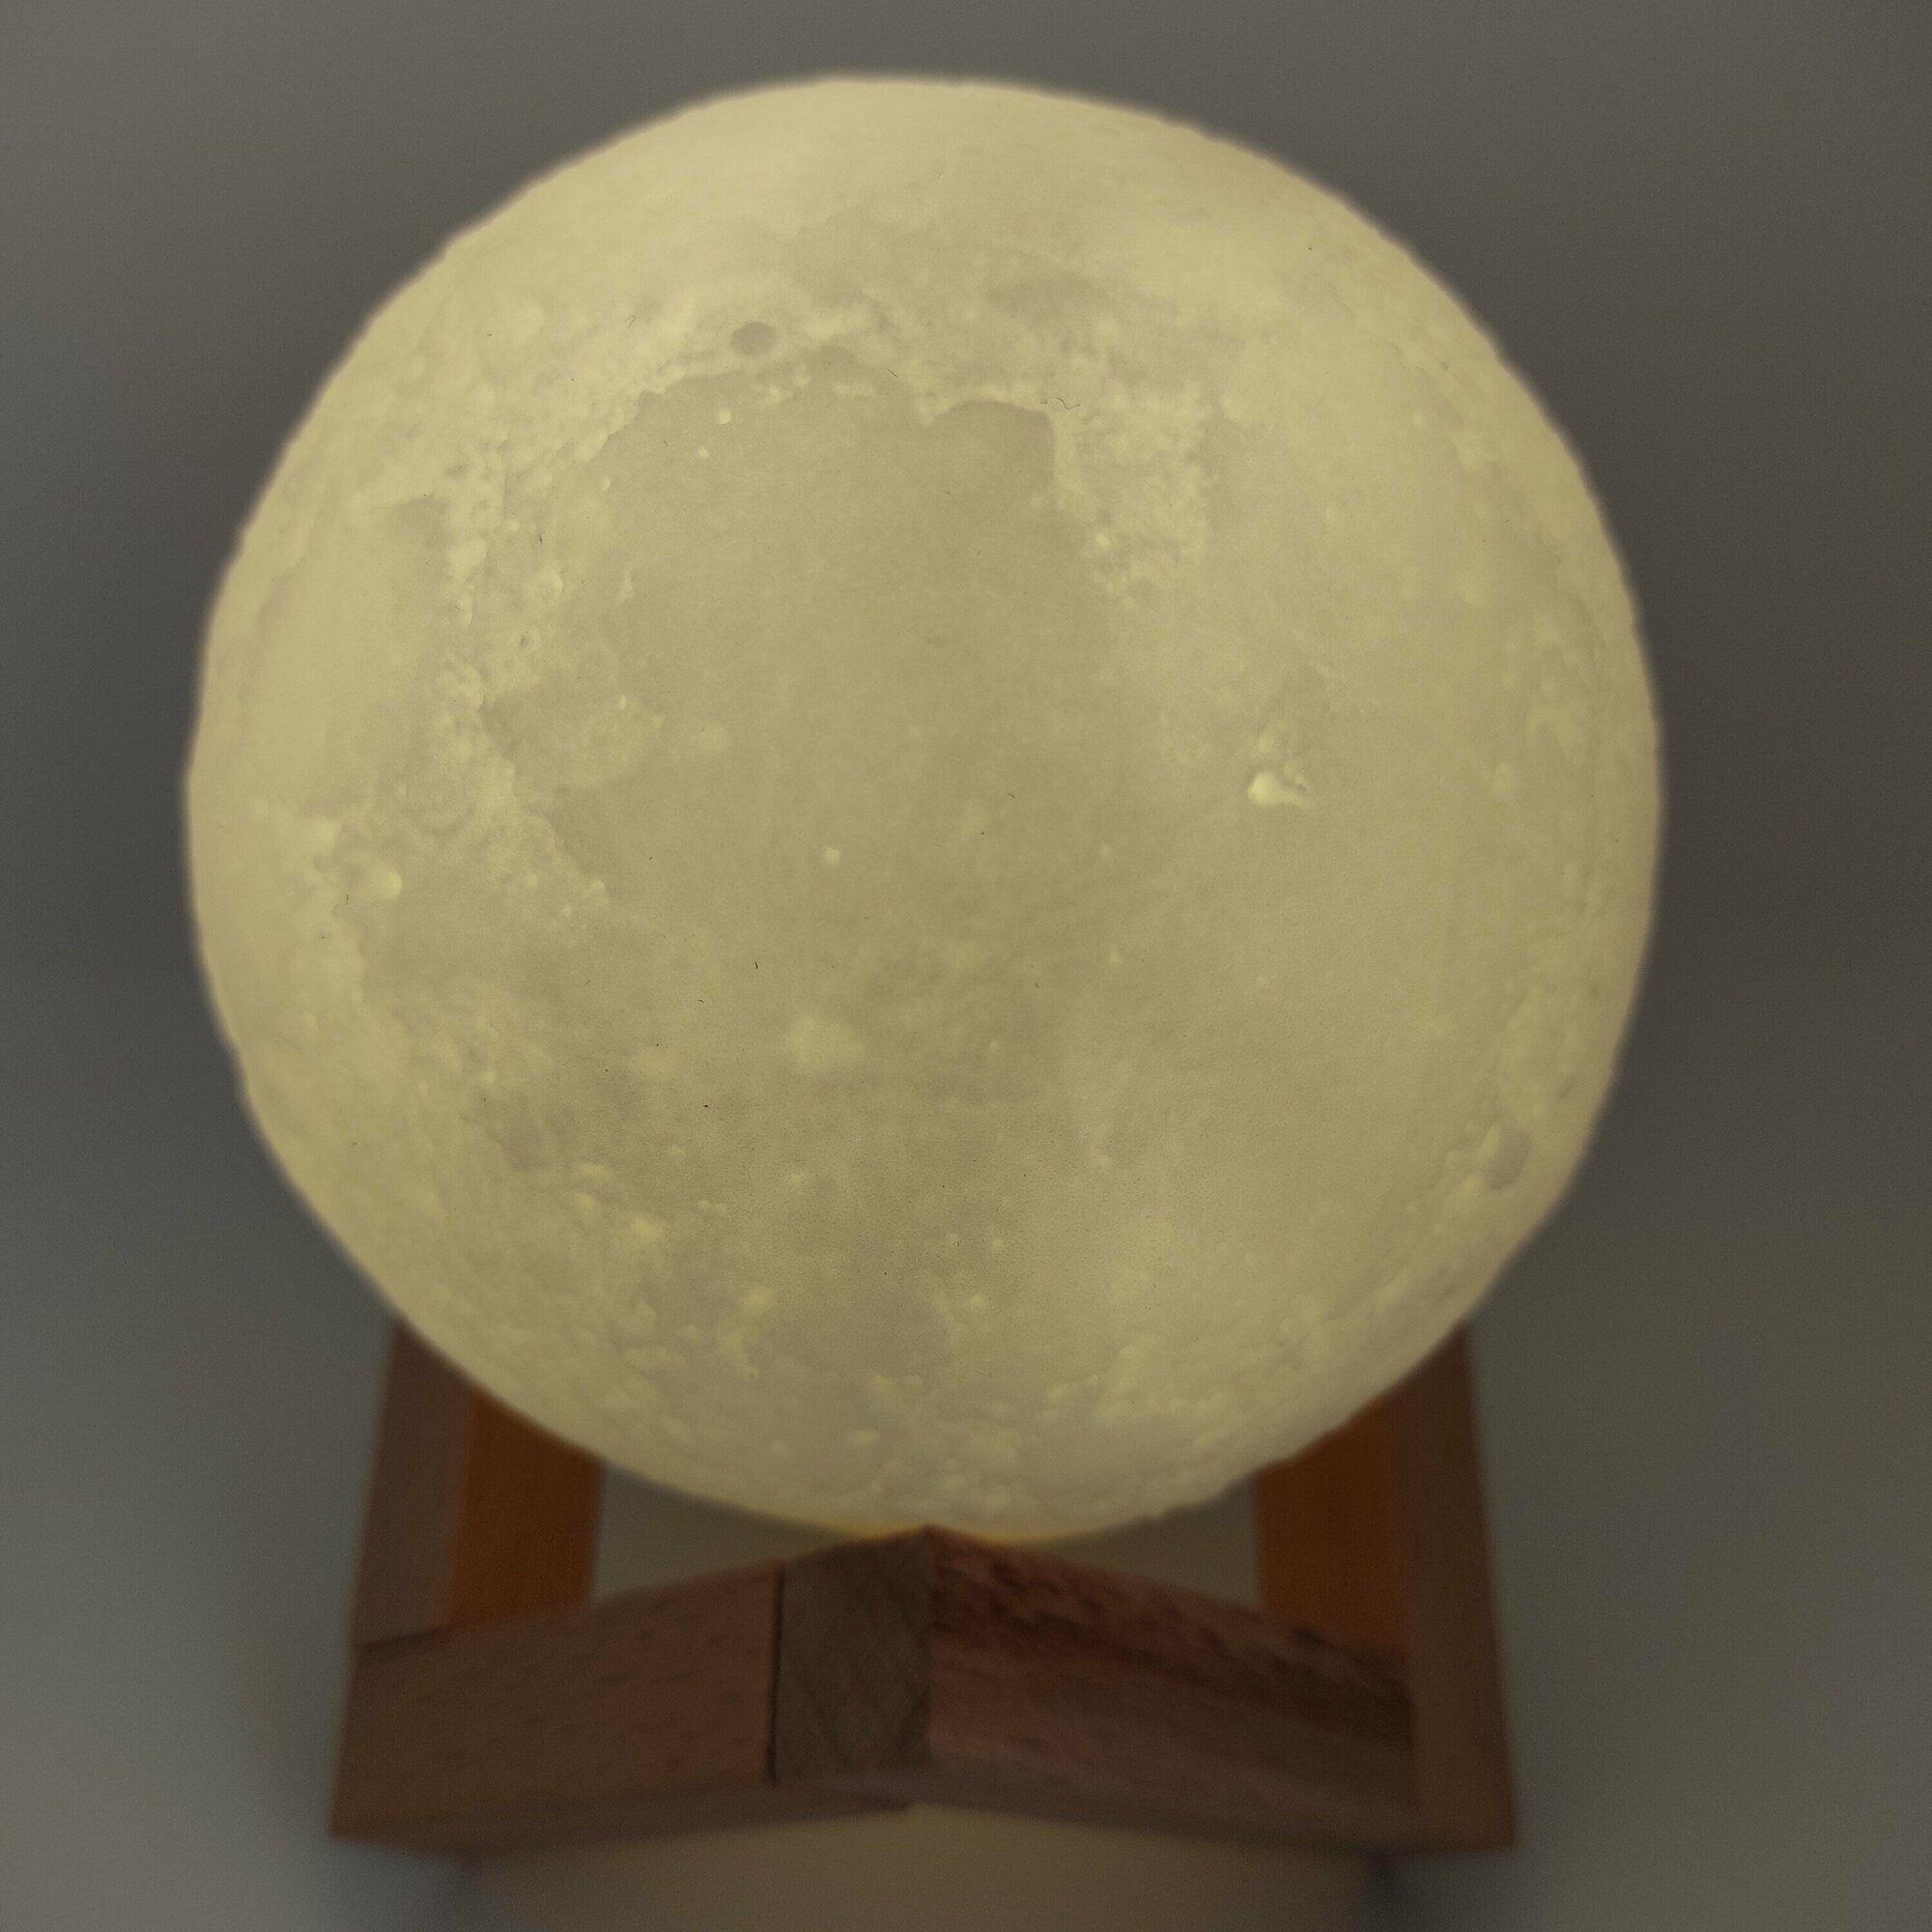 Ночник луна, светильник в форме луны с 3D эффектом, диаметр 9,5 см - фотография № 11